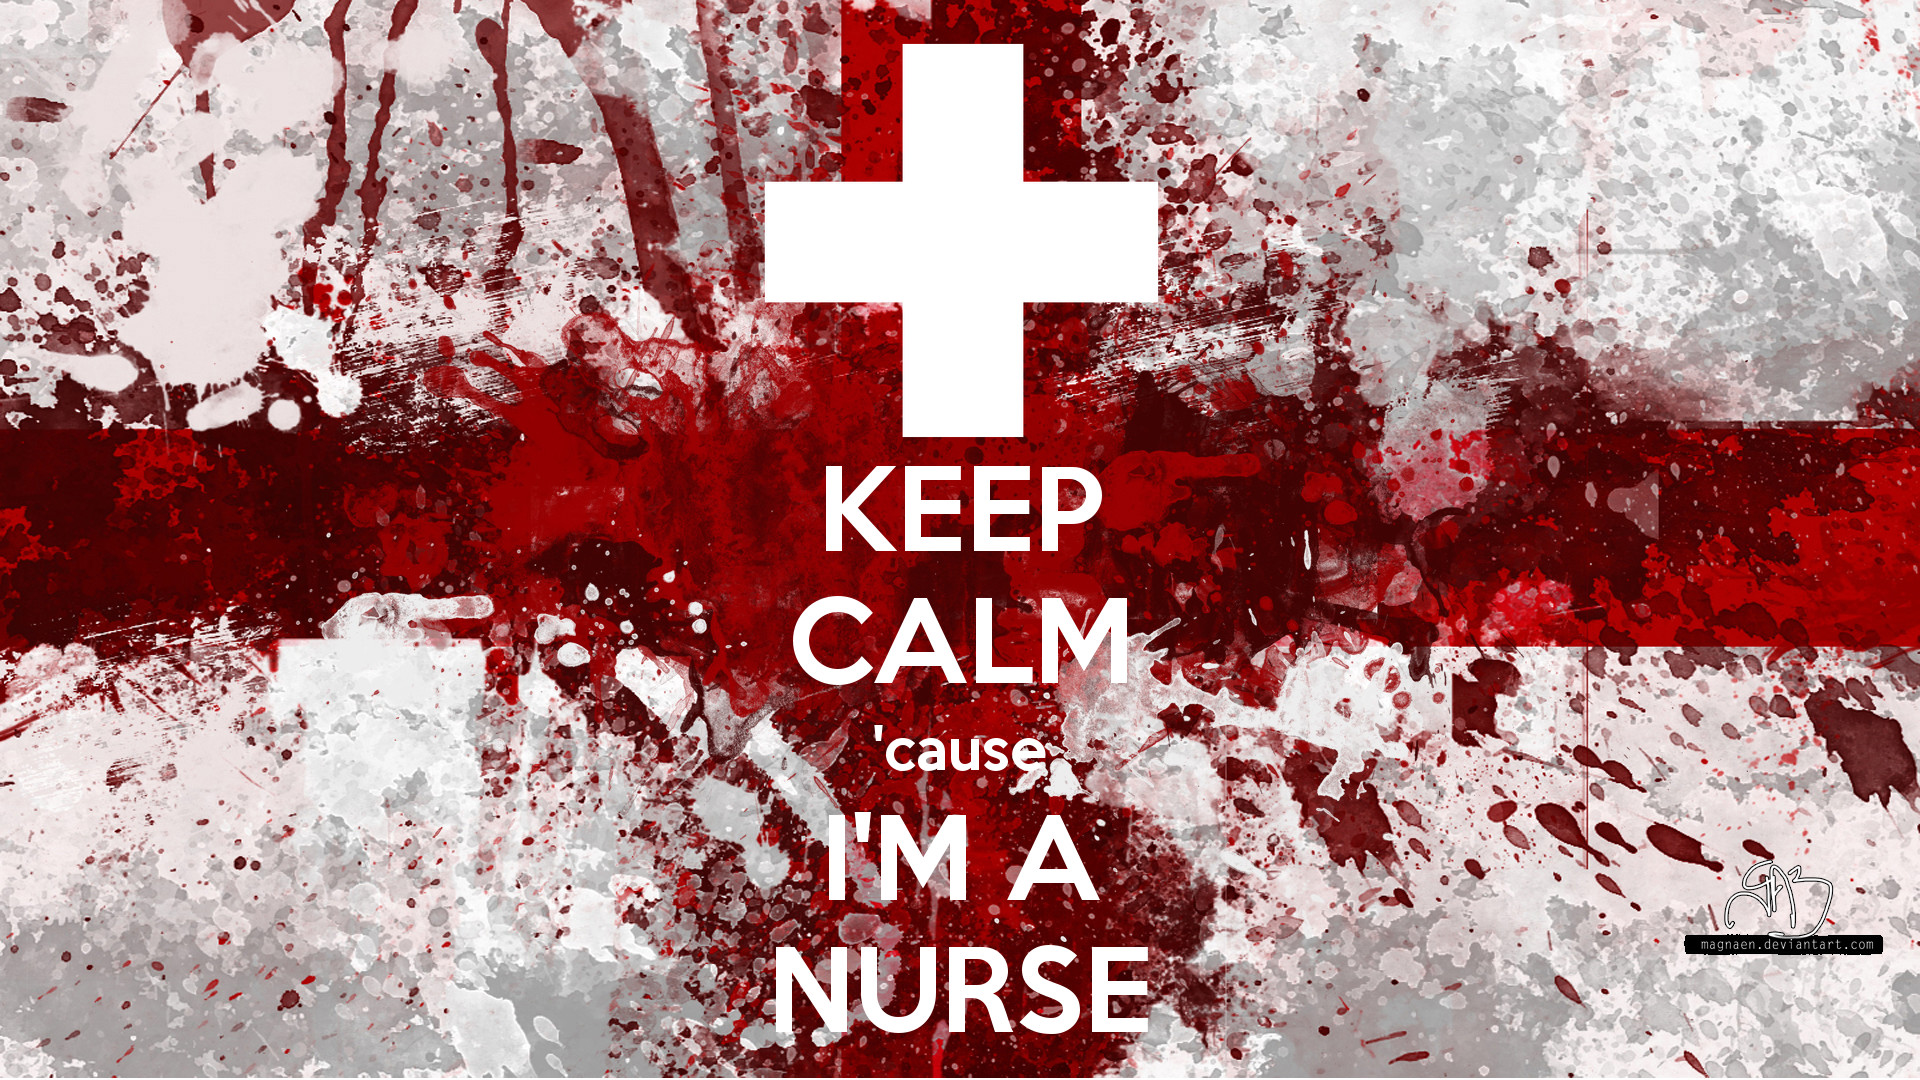 Nurse Wallpaper Images  Free Download on Freepik